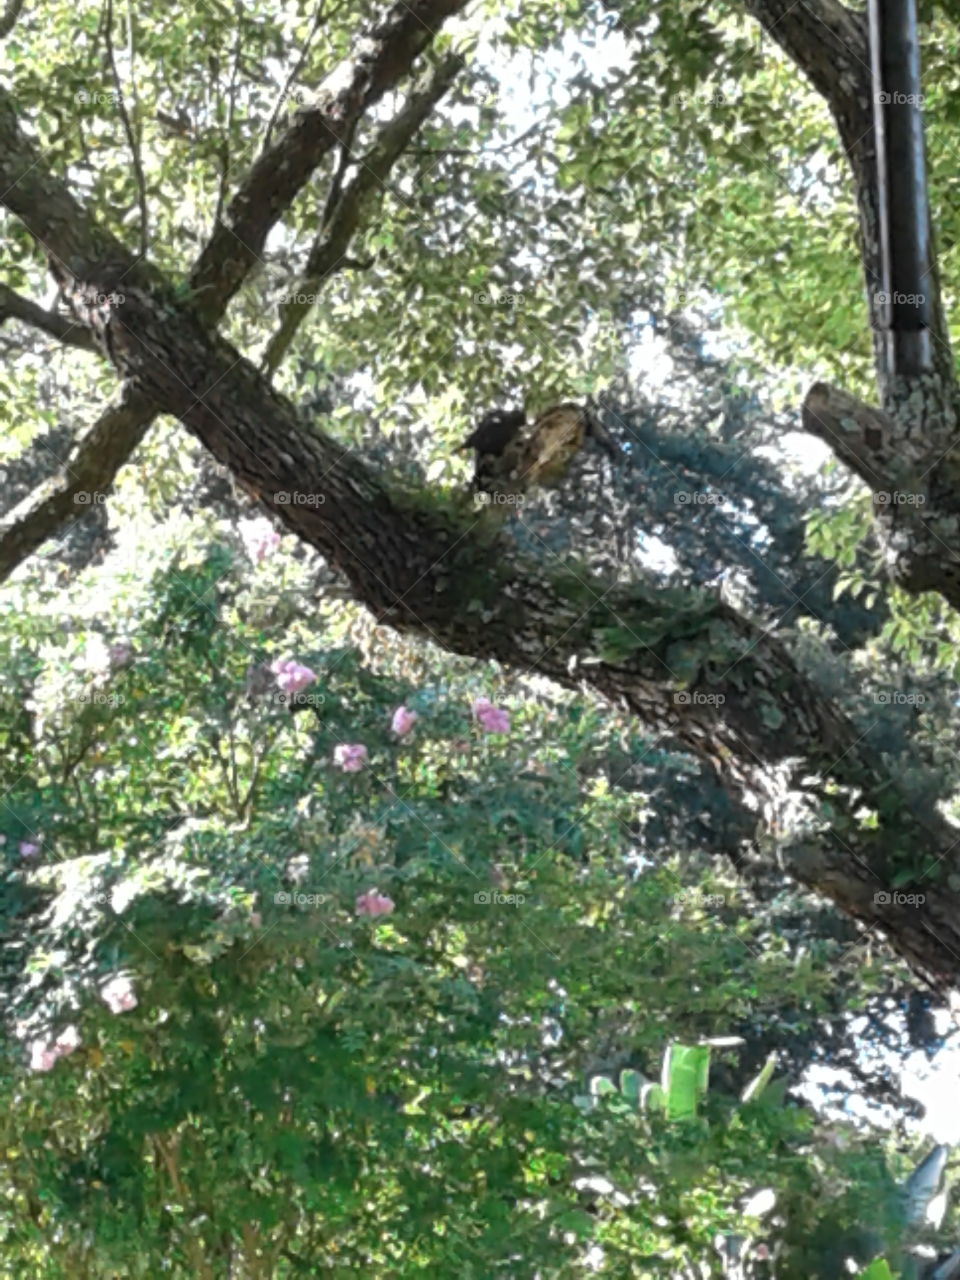 Woodpecker in a tree.